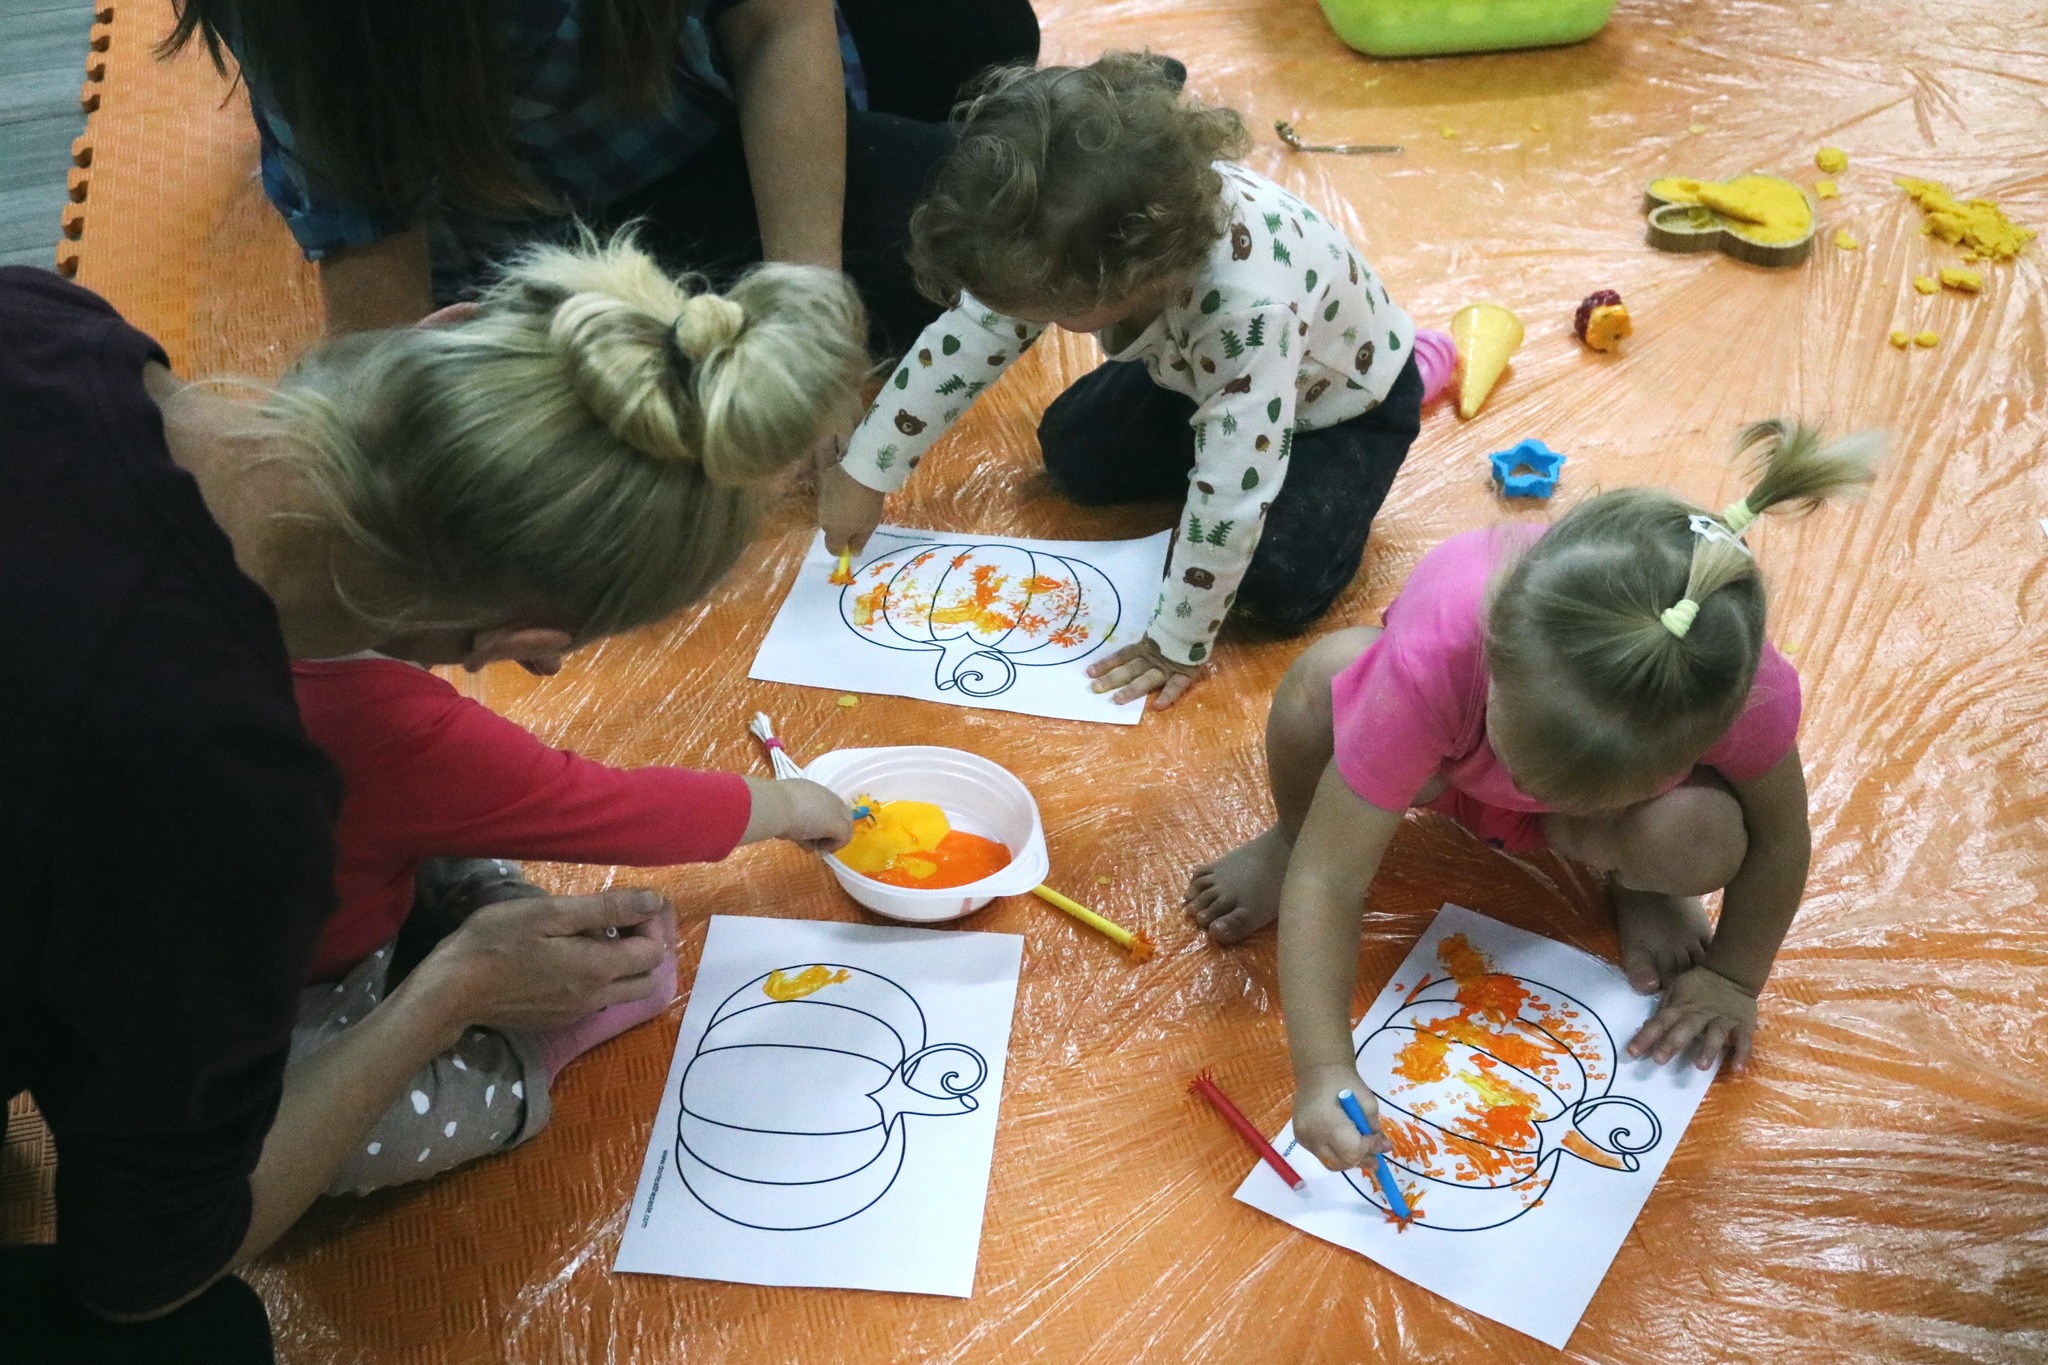 Na zdjęciu widać dzieci malujące obrazki dyni.